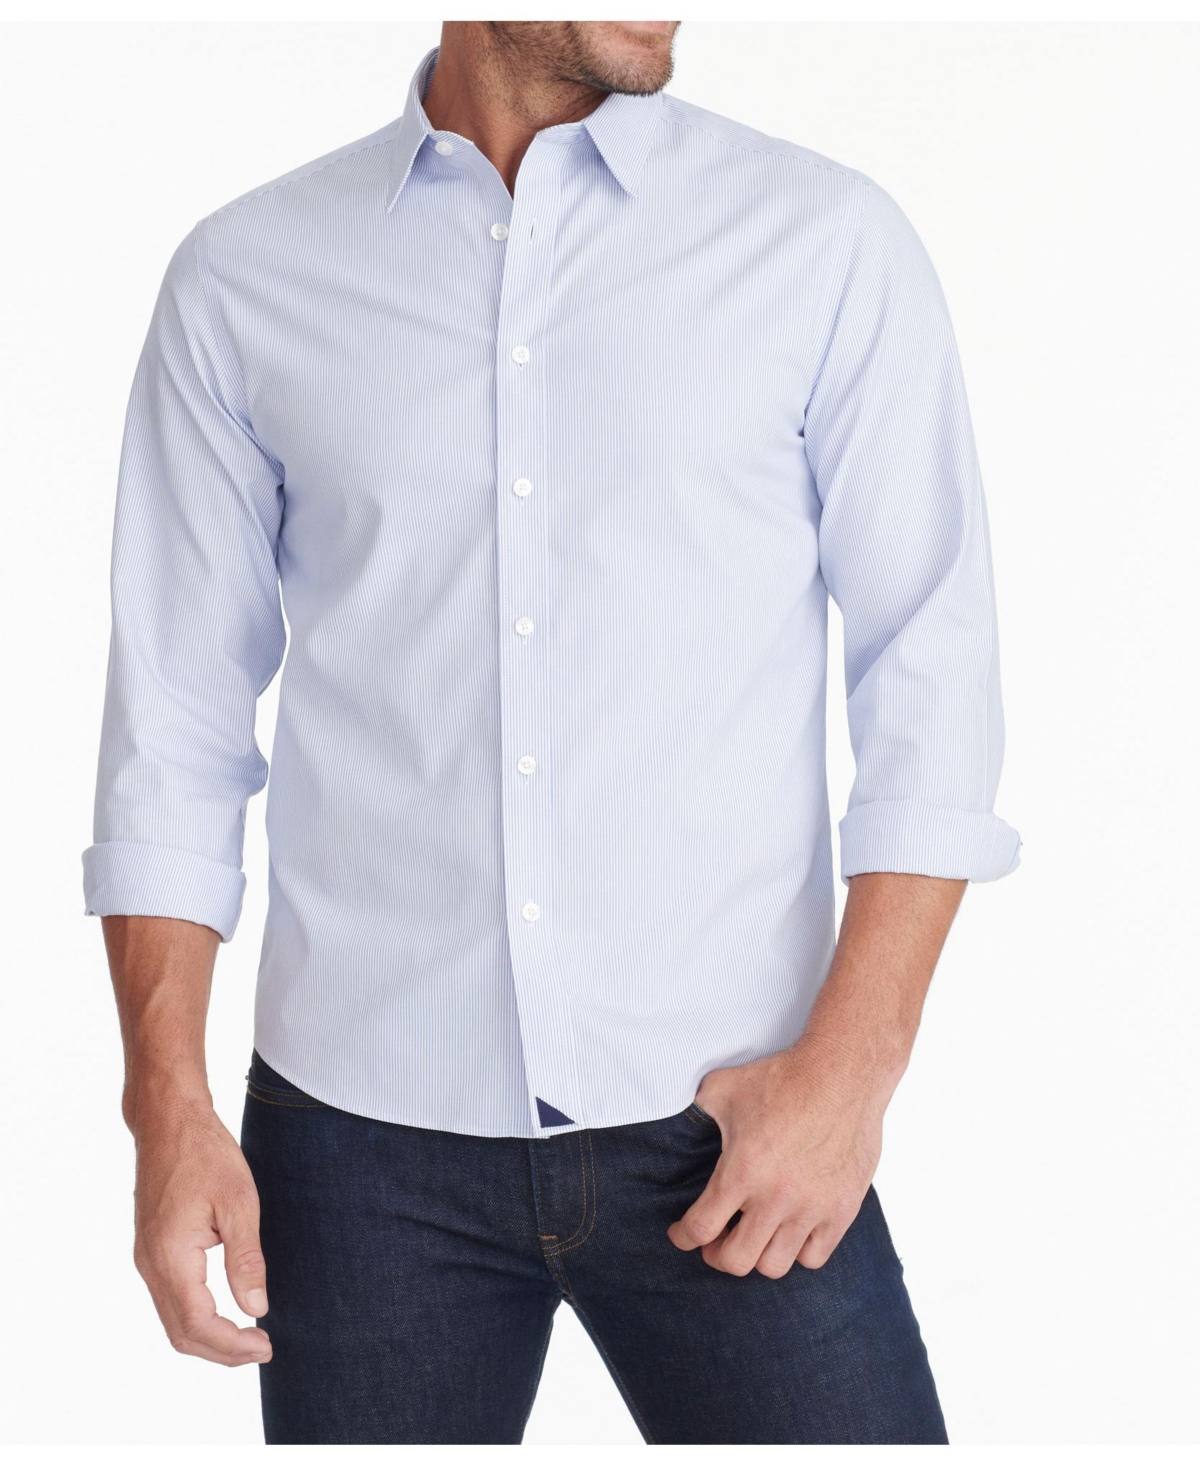 Men's Slim Fit Wrinkle-Free Bordeaux Button Up Shirt - Blue